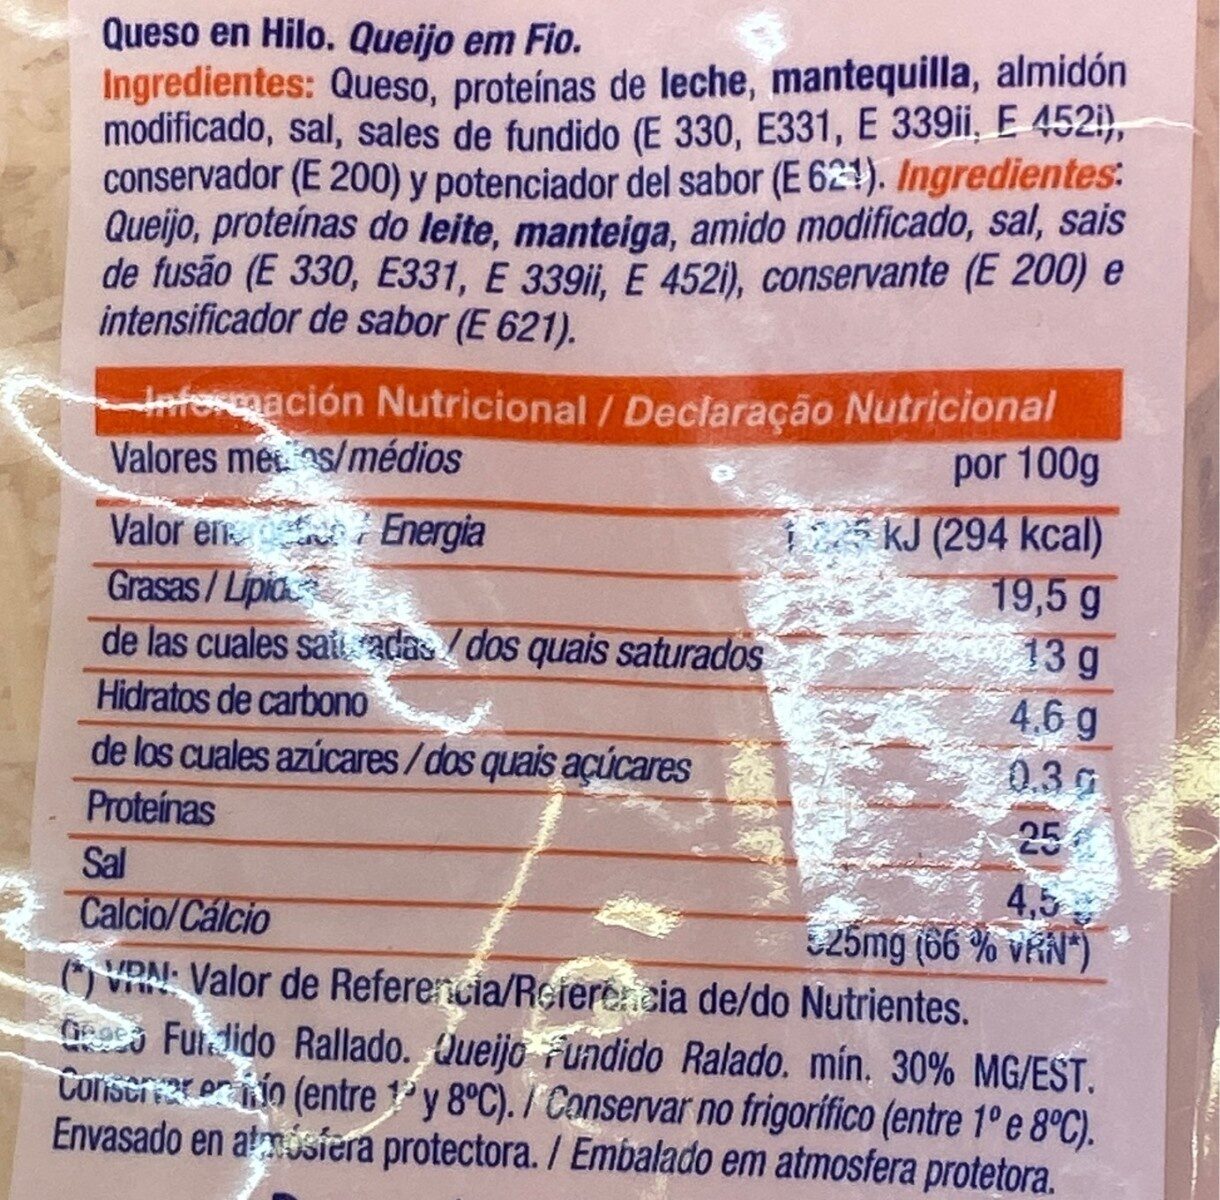 Queso en hilo - Nutrition facts - es